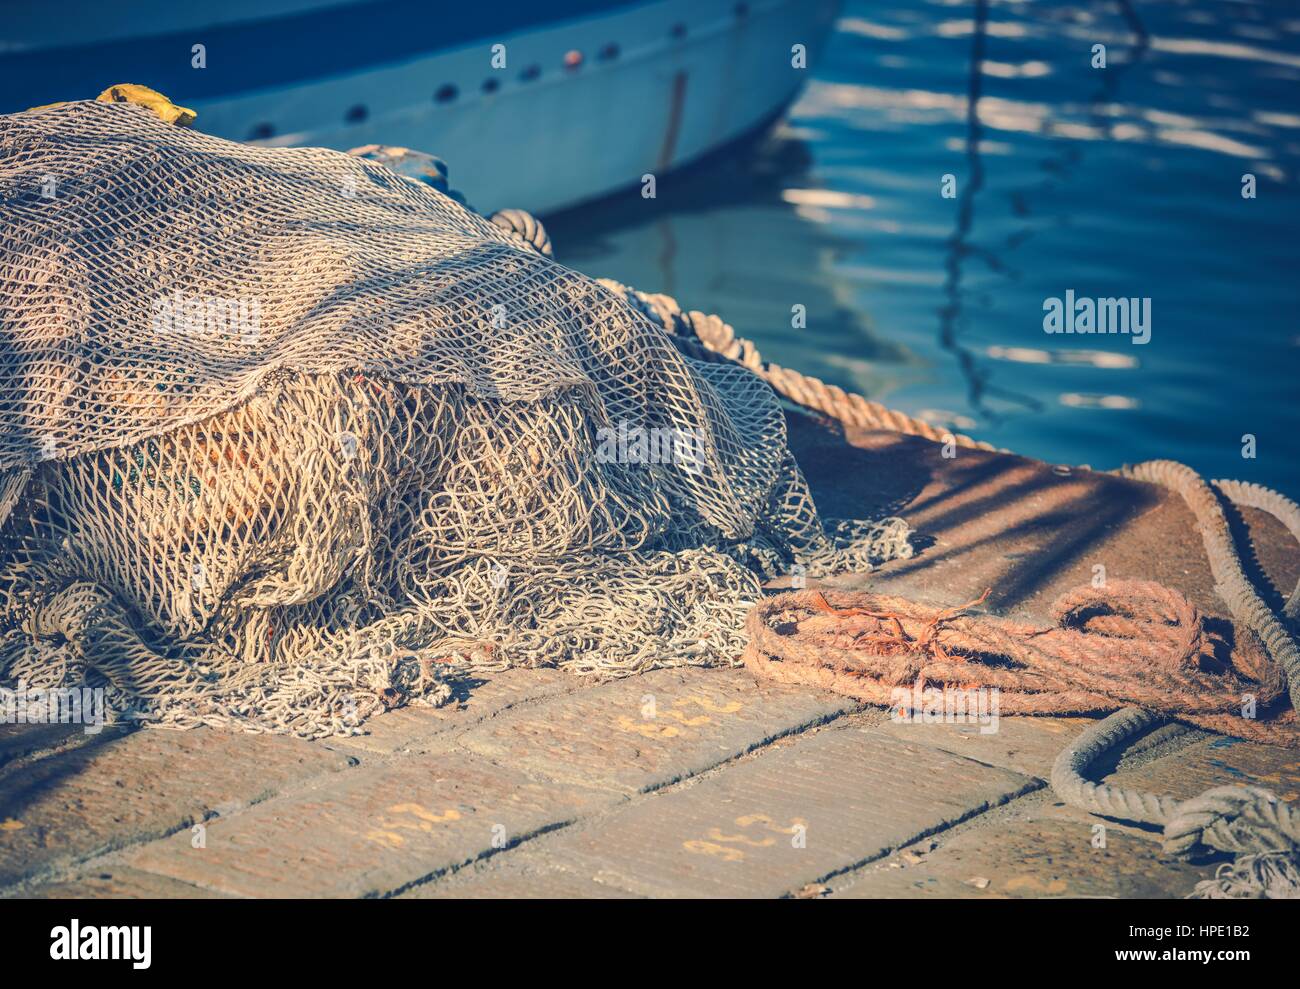 Fischernetze auf dem Marina Closeup Foto. Fischerei-Industrie. Stockfoto